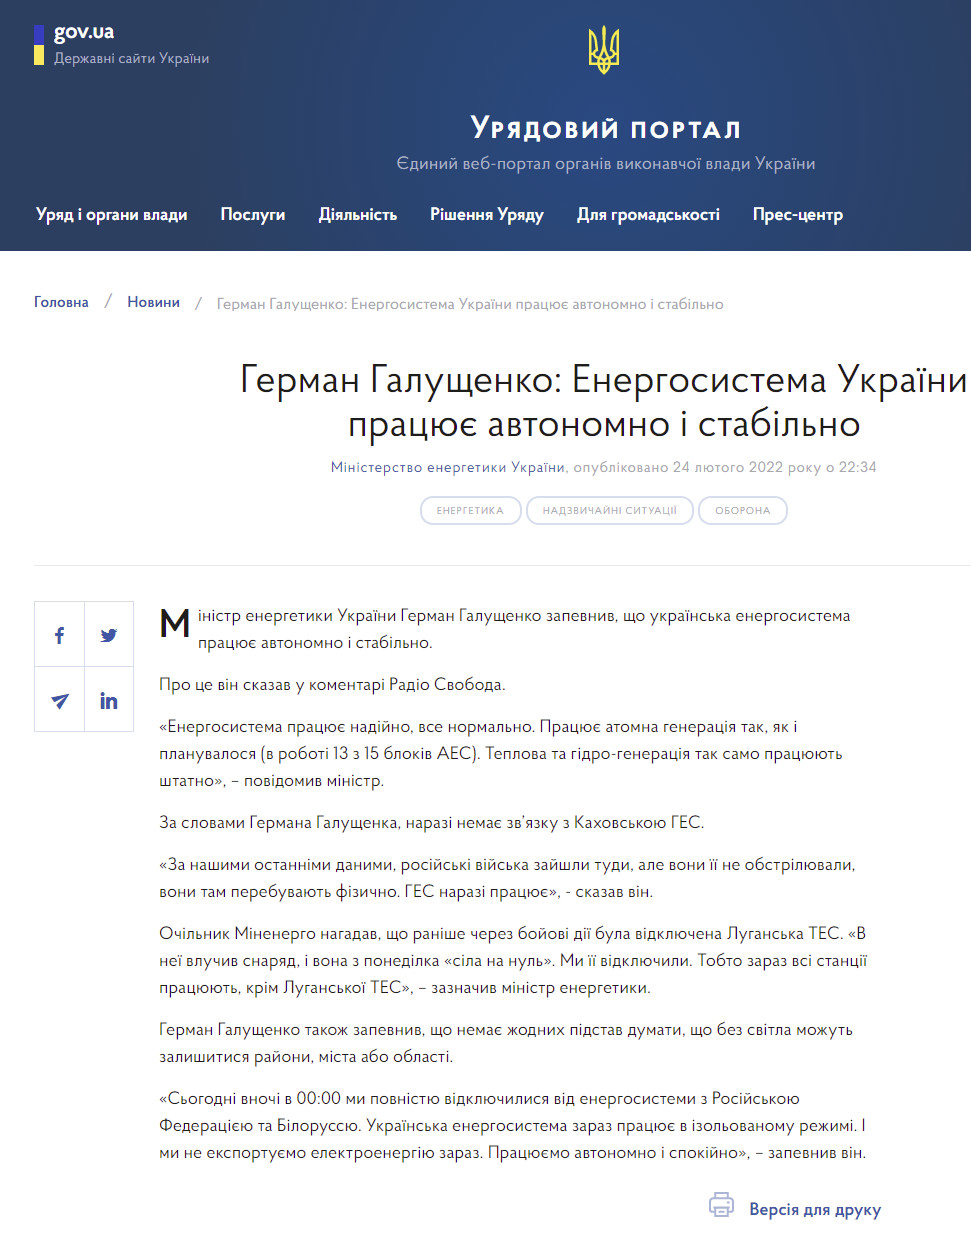 https://www.kmu.gov.ua/news/german-galushchenko-energosistema-ukrayini-pracyuye-avtonomno-i-stabilnogerman-galushchenko-energosistema-ukrayini-pracyuye-avtonomno-i-stabilno